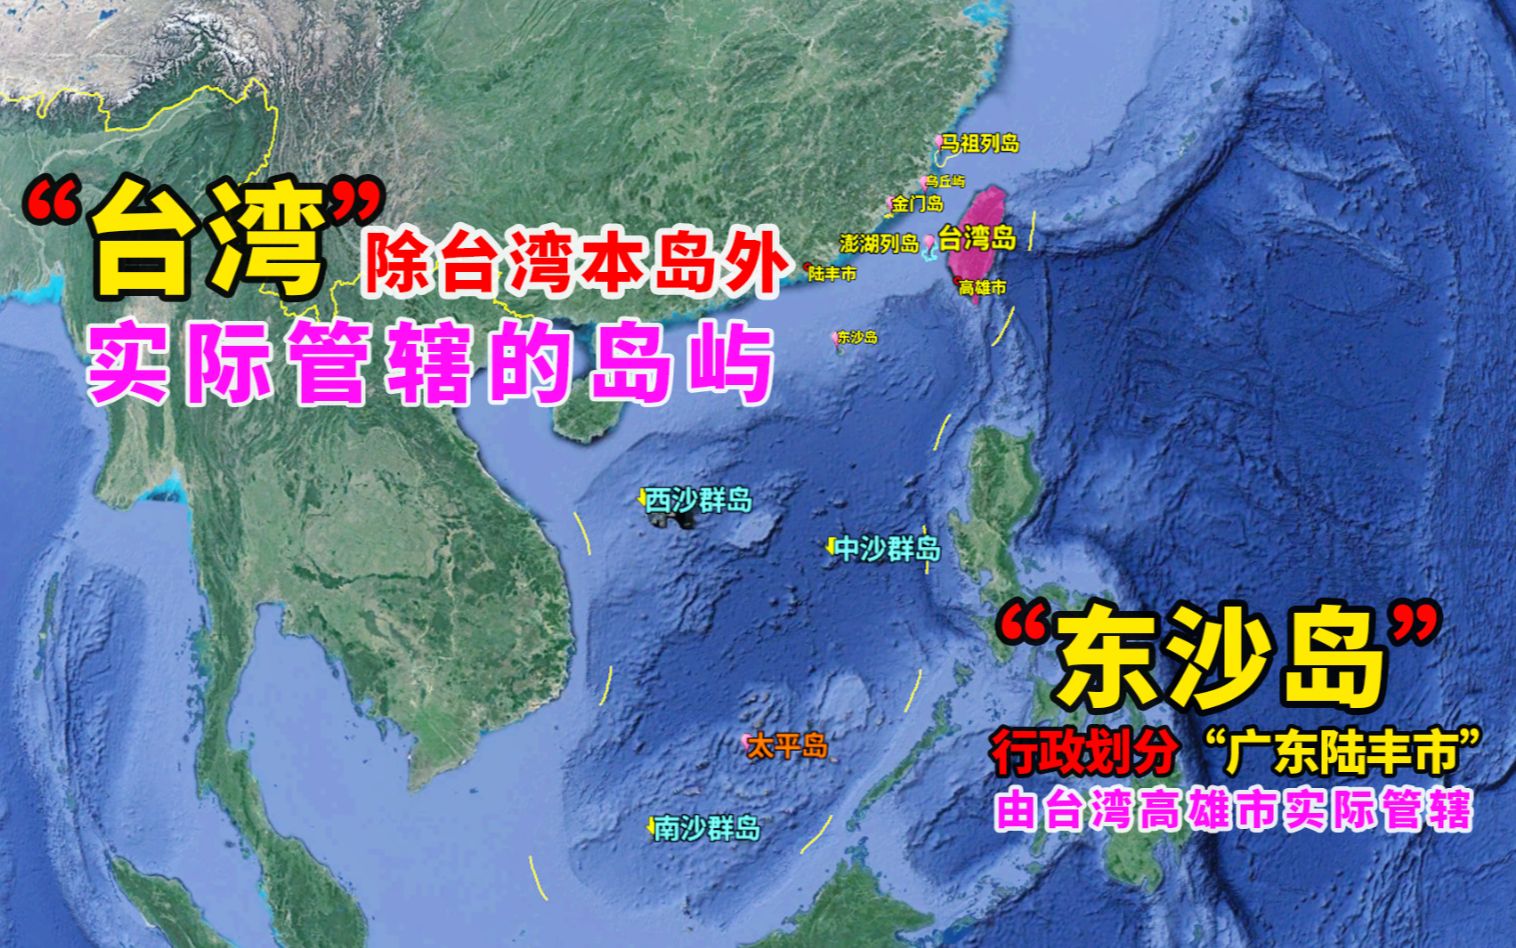 管辖】台湾省管辖的东沙群岛,距离广东约250公里,地理位置非常重要